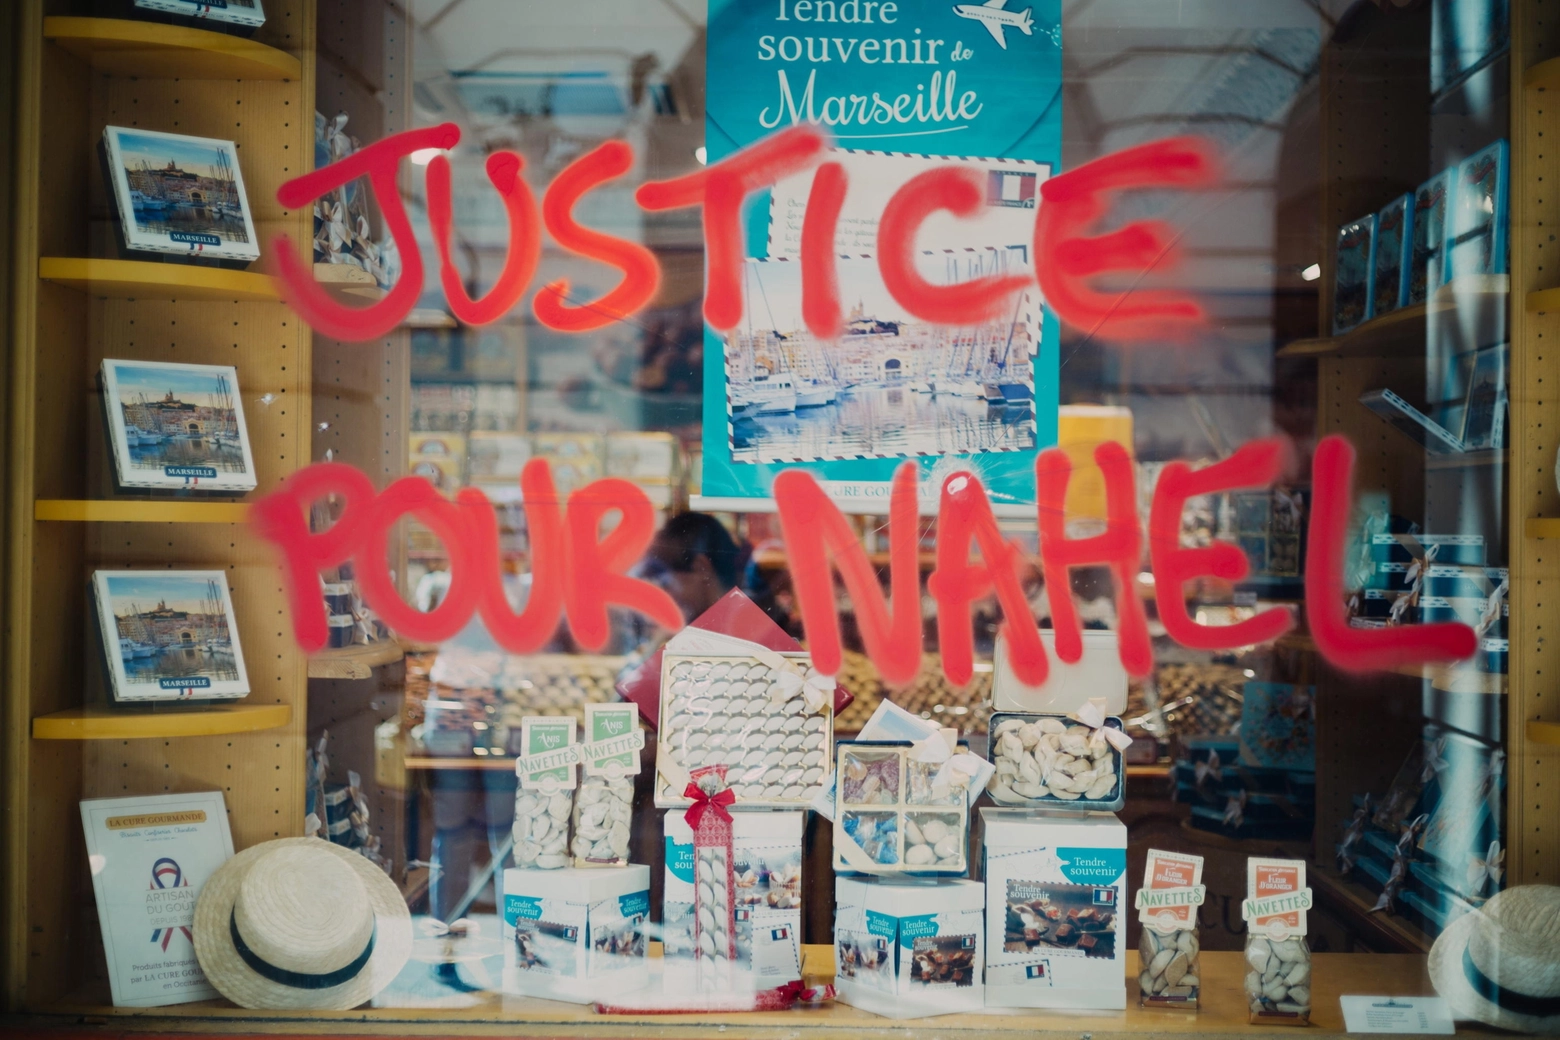 Una scritta su una vetrina durante le rivolte